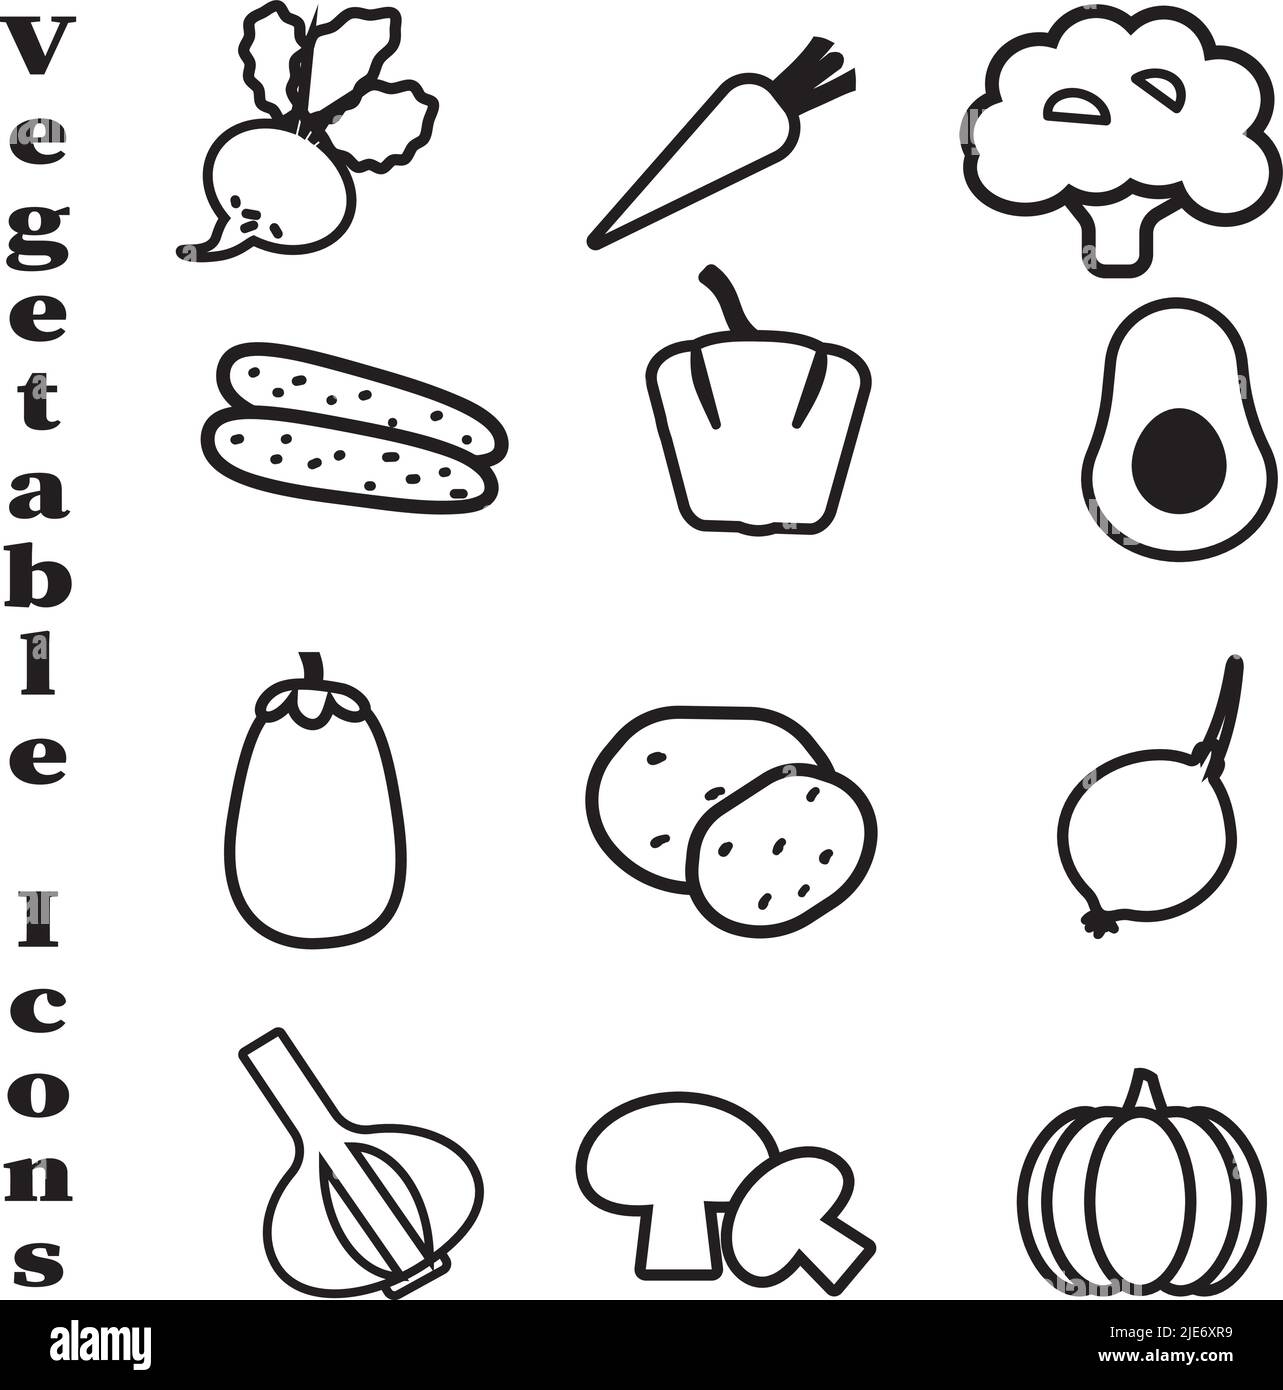 Satz von Symbolen für die Gemüselinie. Schwarze Vektorgrafiken auf weißem Hintergrund. Gesunde Ernährung Ernährung Konzept. Stock Vektor